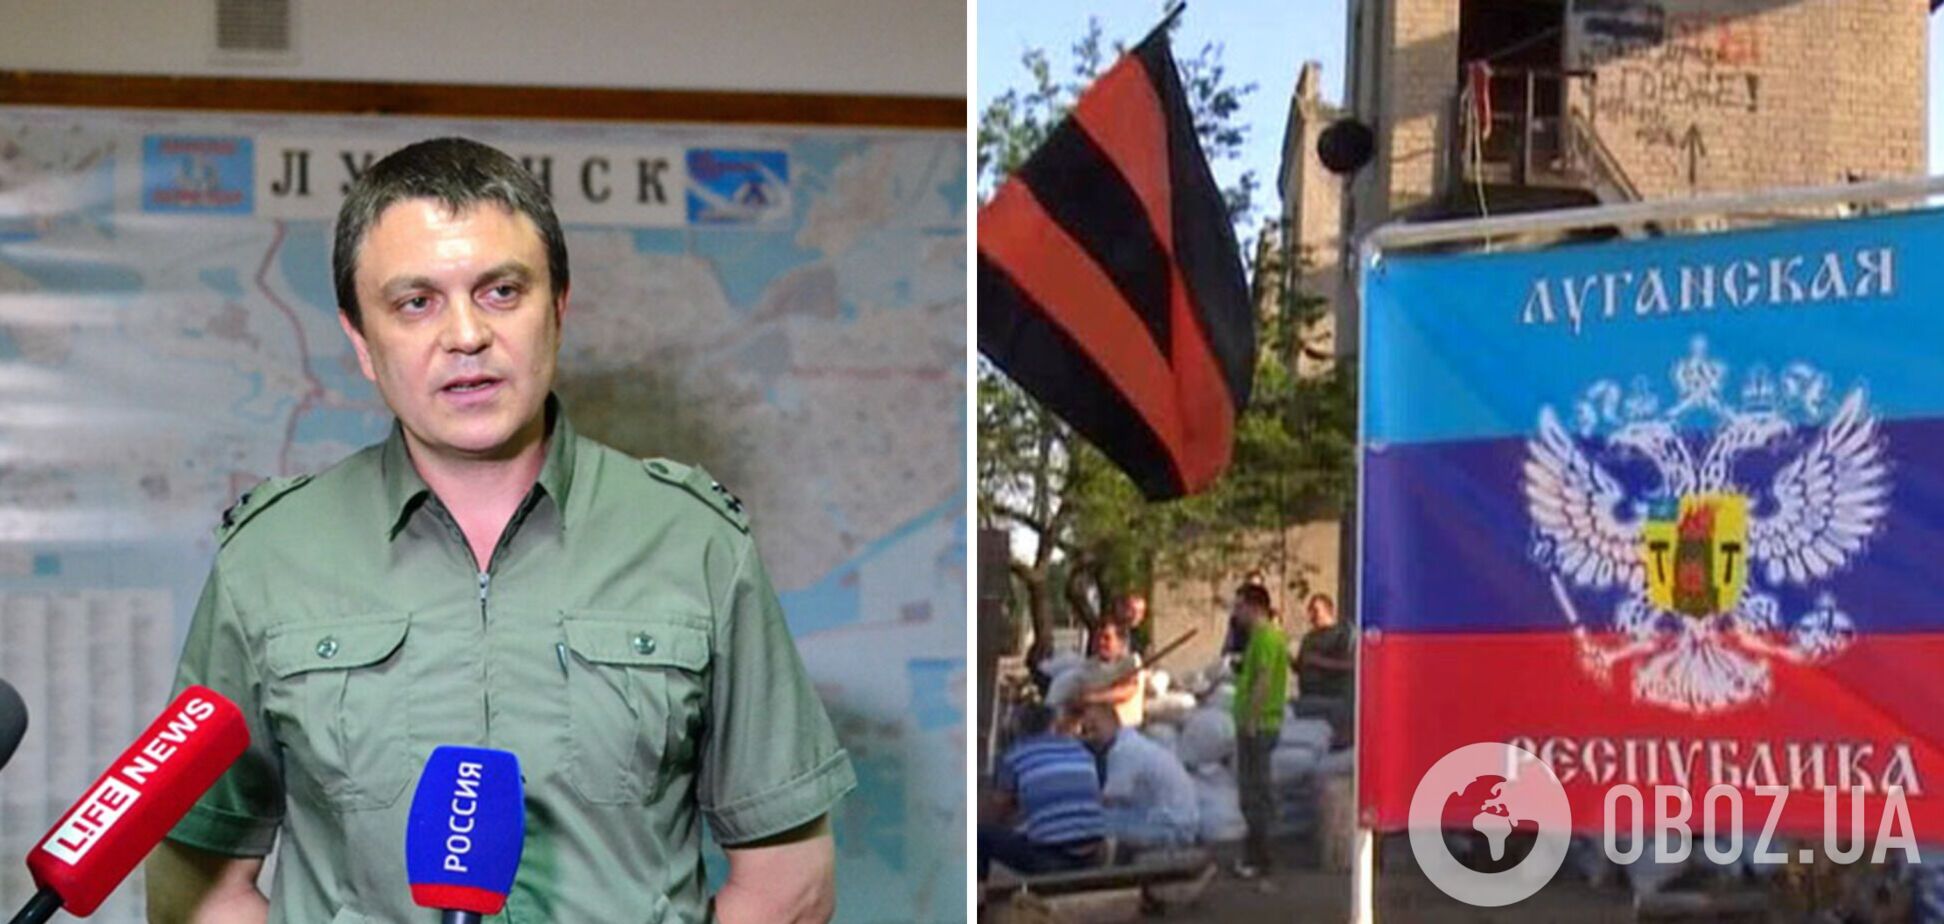 Пасечник самовольно определил территорию 'ЛНР' в границах Луганской области